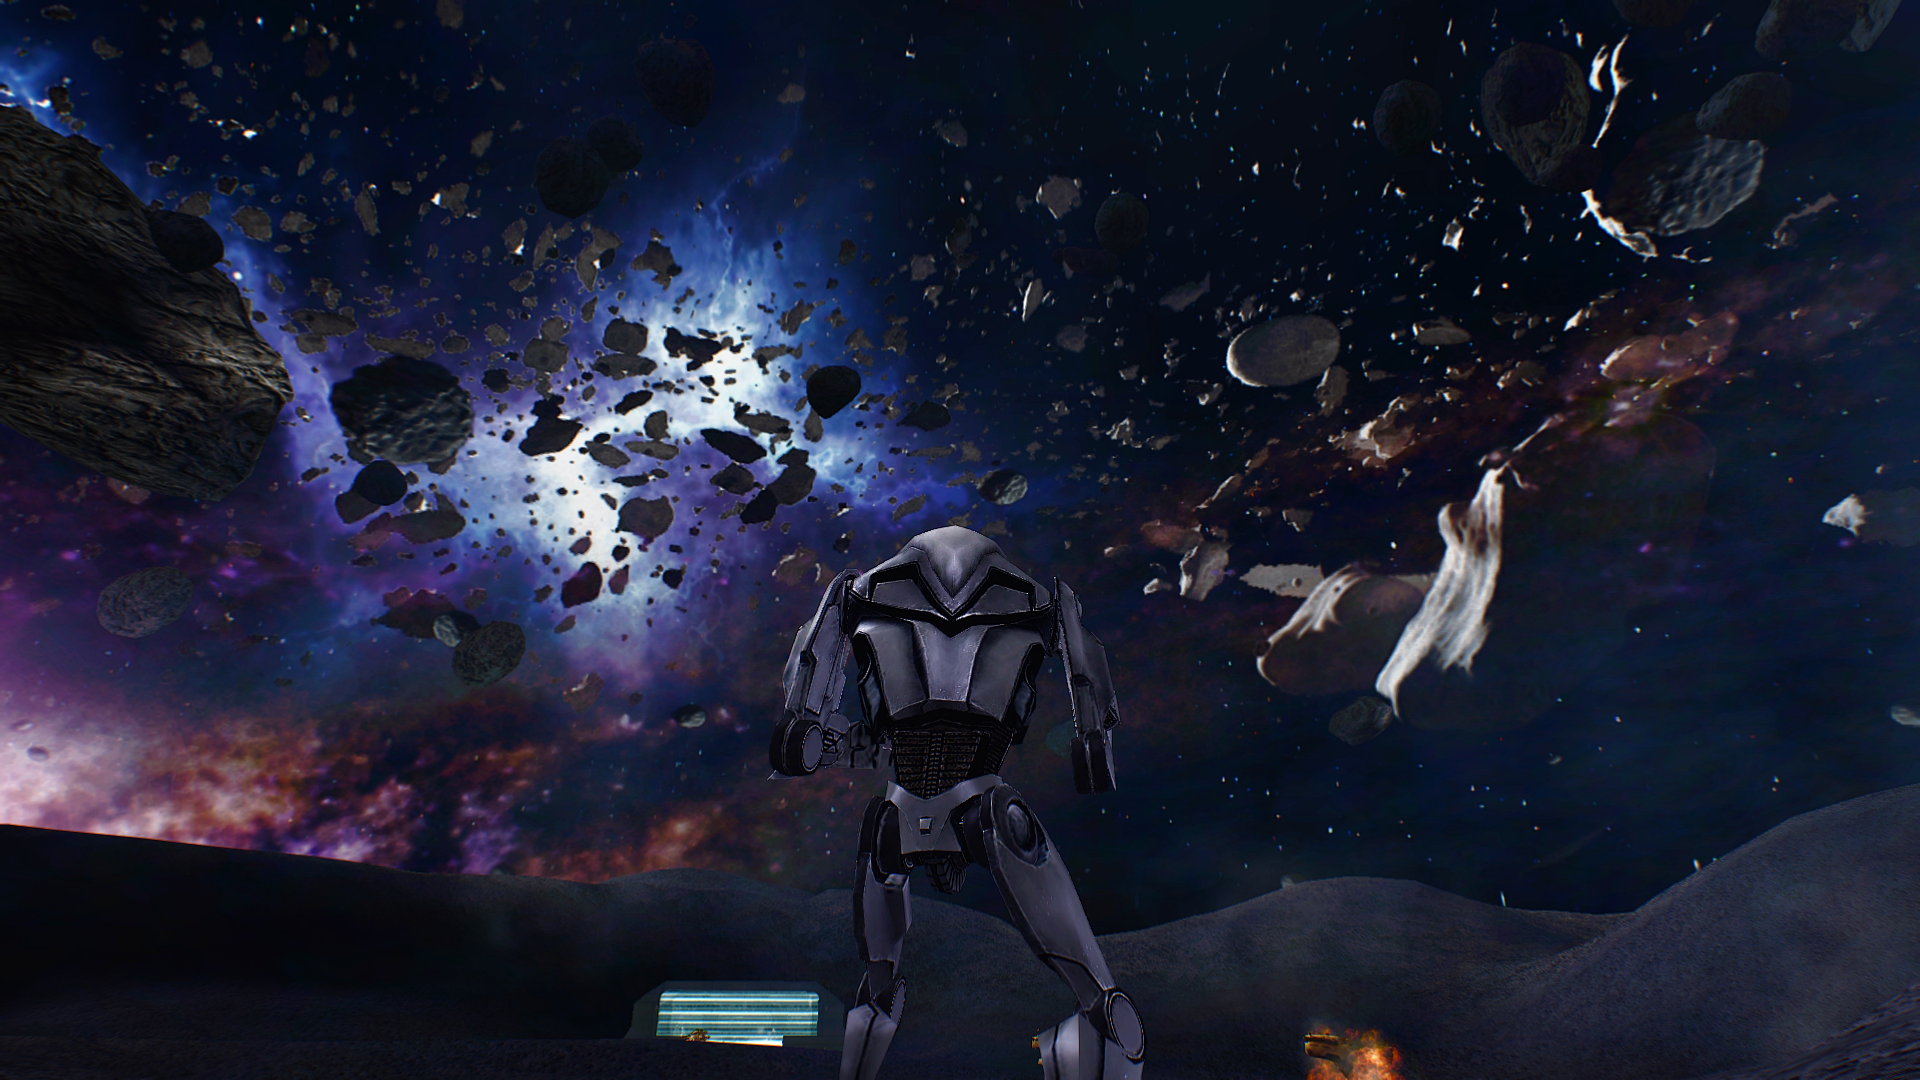 star wars battlefront 2 graphics mod 2019 download